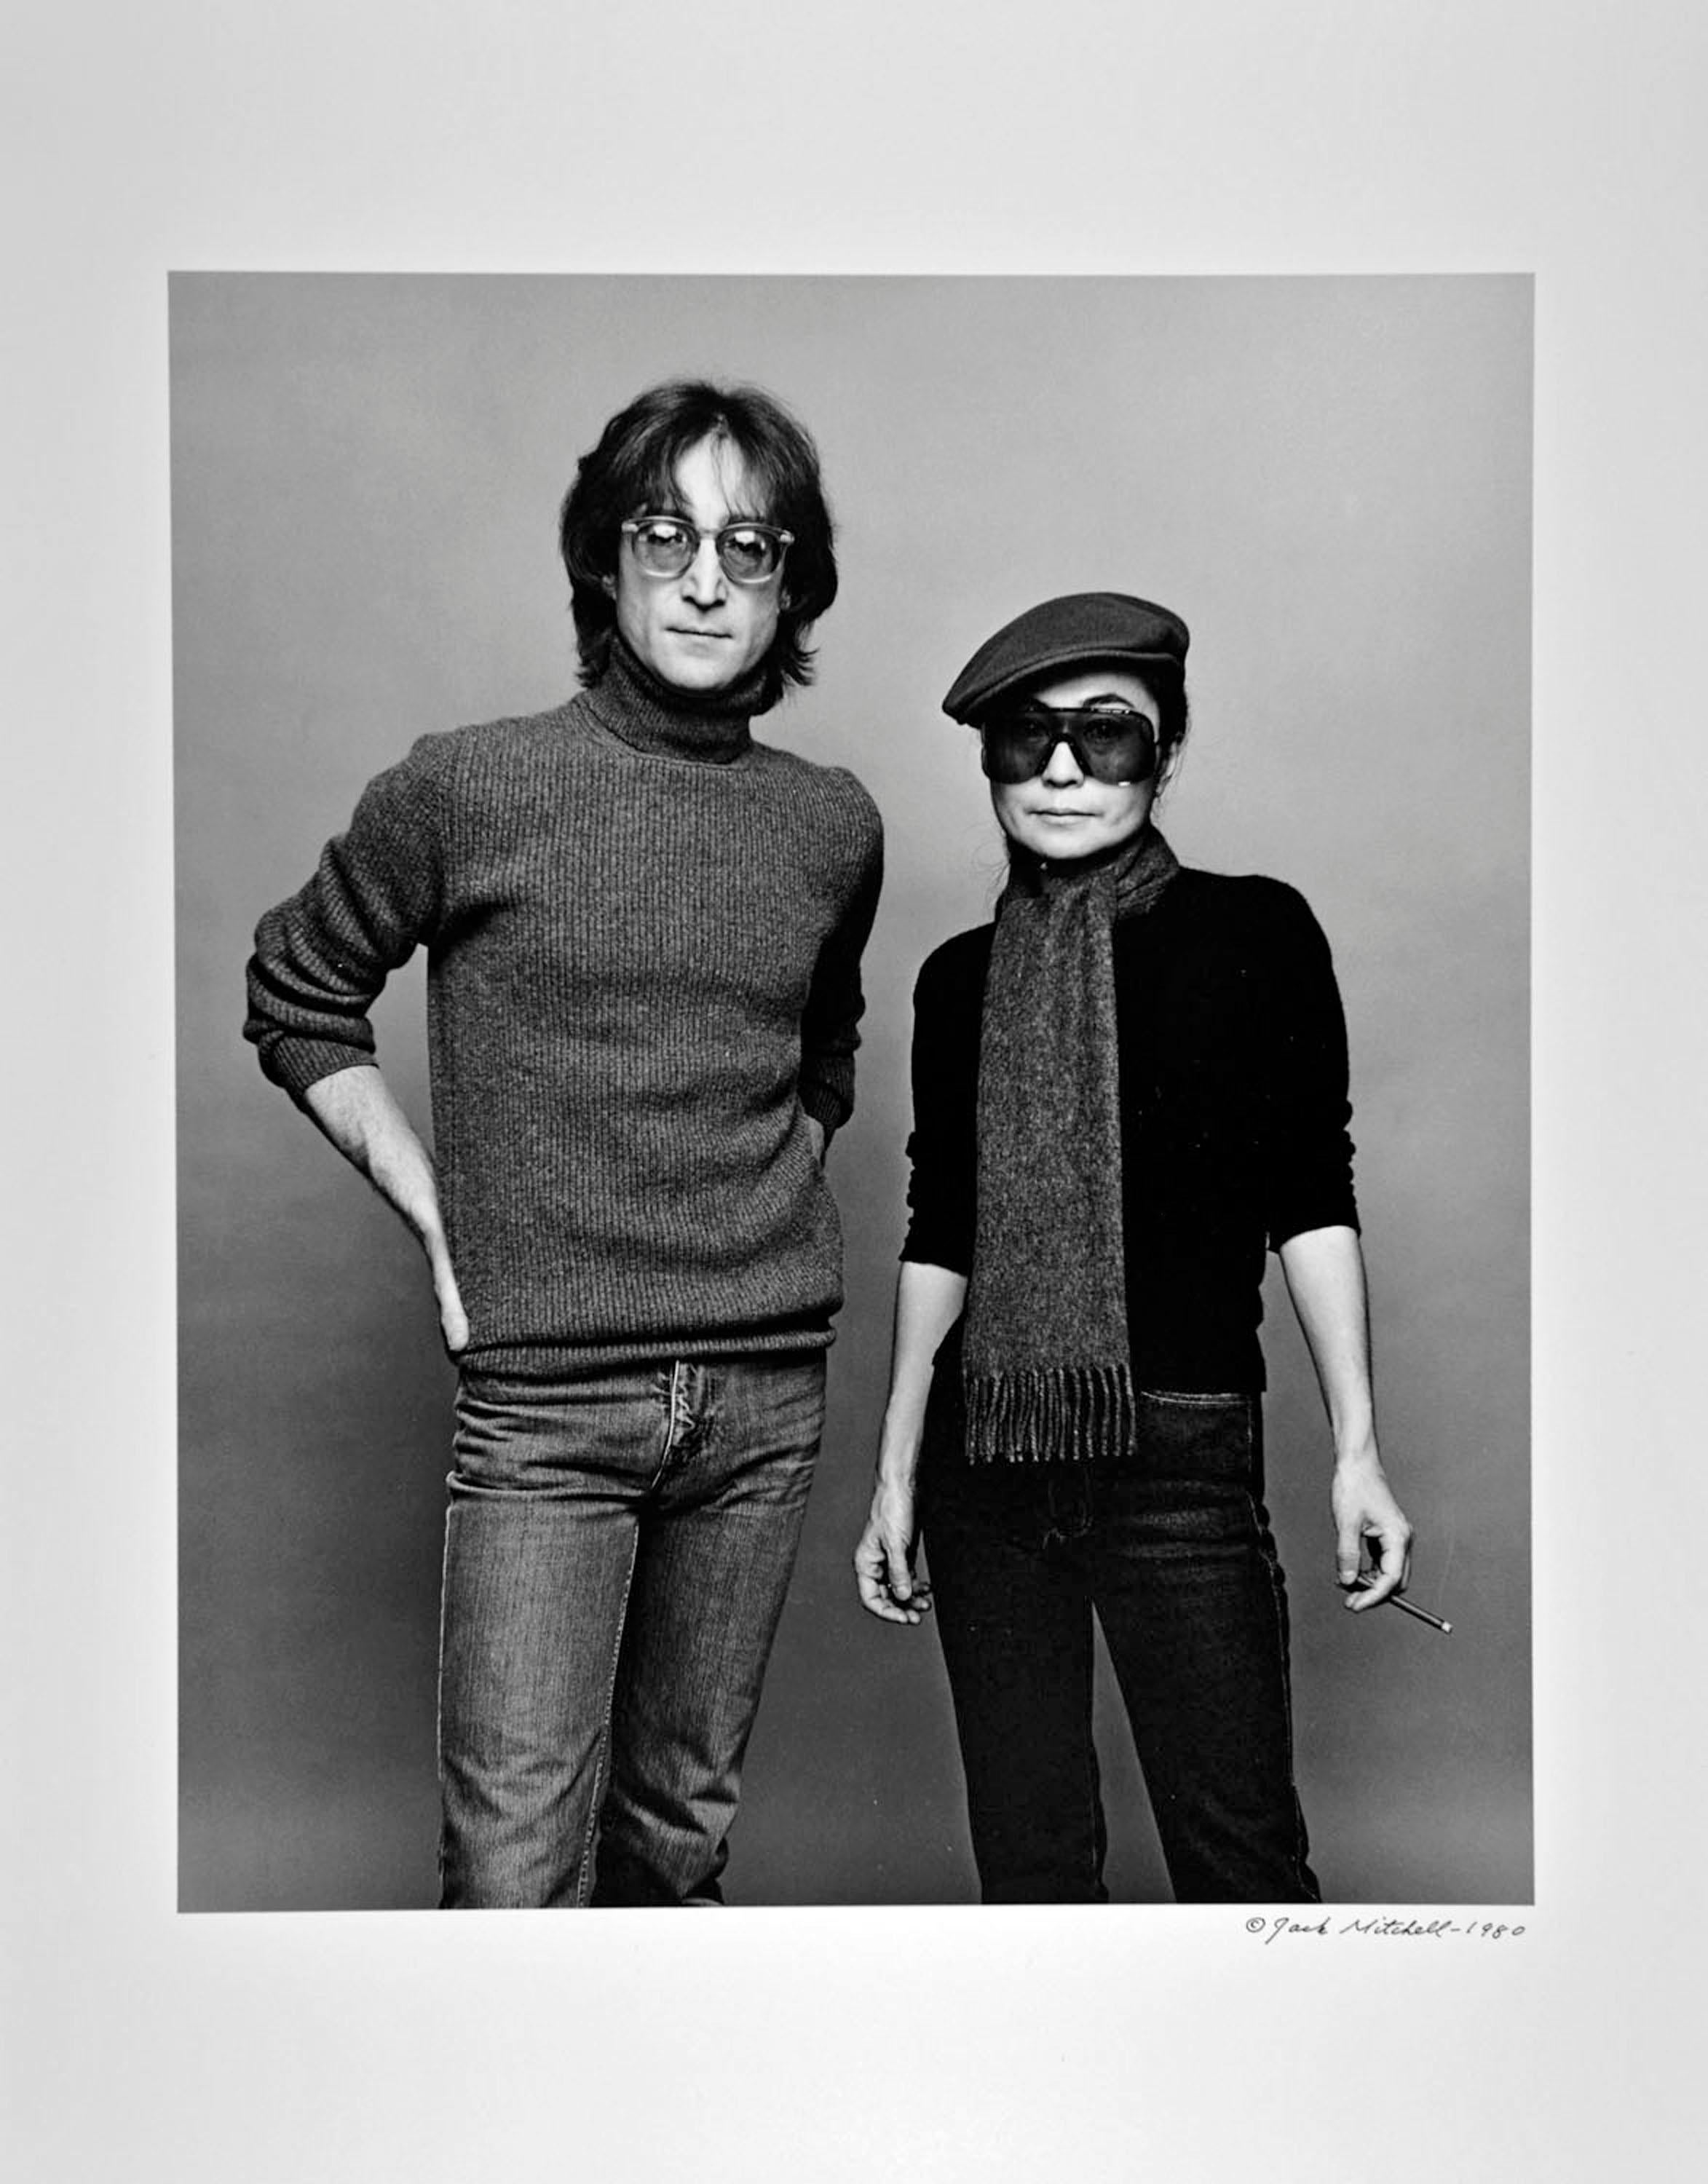 11 x 14" alte Silbergelatinefotografie von John Lennon und Yoko Ono, aufgenommen am 2. November 1980, der letzten umfassenden Fotosession in Lennons Leben. Signiert von Jack Mitchell auf der Rückseite des Drucks.  Dies ist der einzige Druck in den